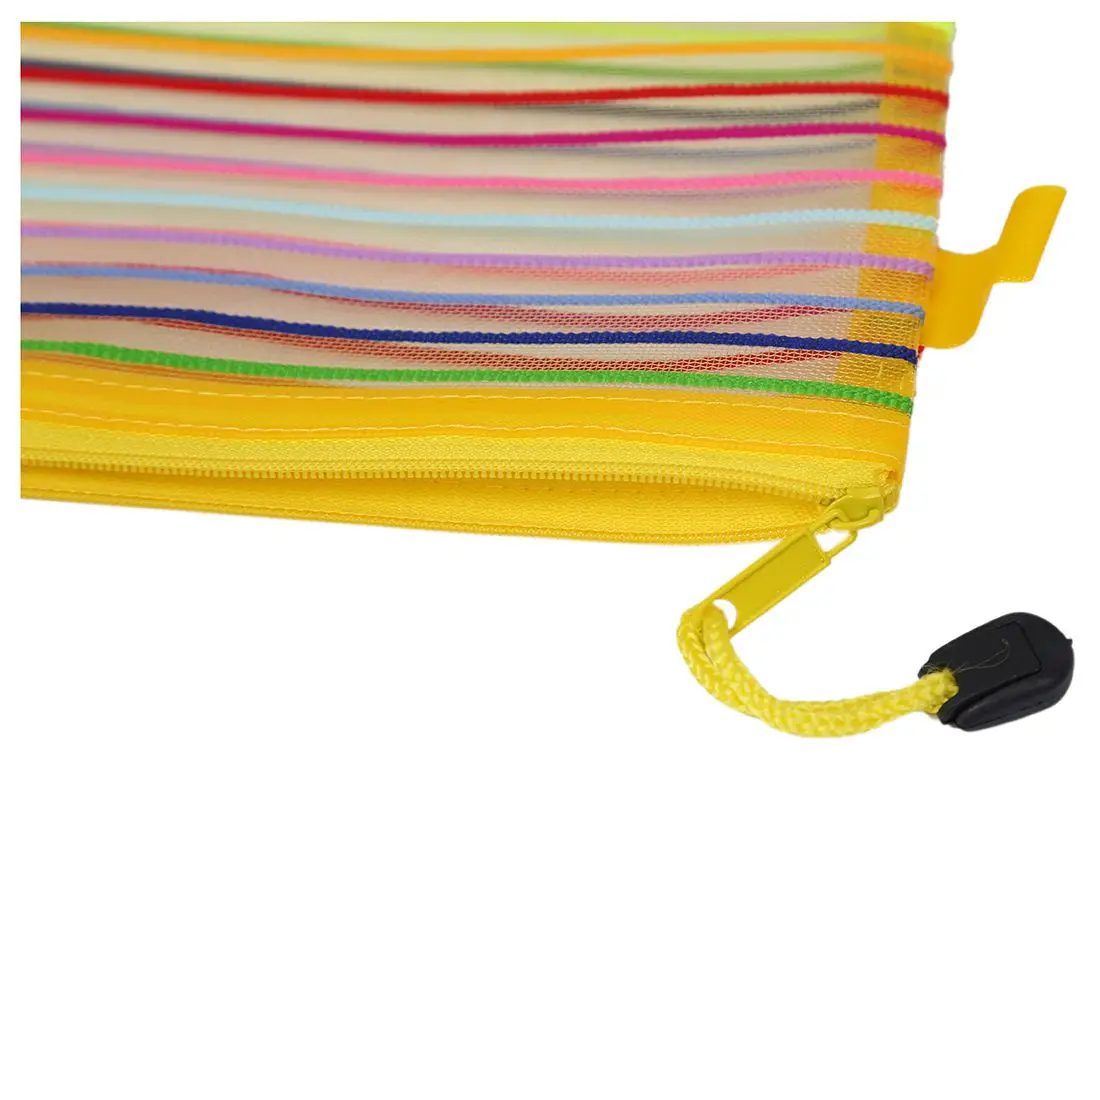 На молнии нейлоновая сетка Разноцветными полосками A4 Бумага документы ручка файла сумка Папка